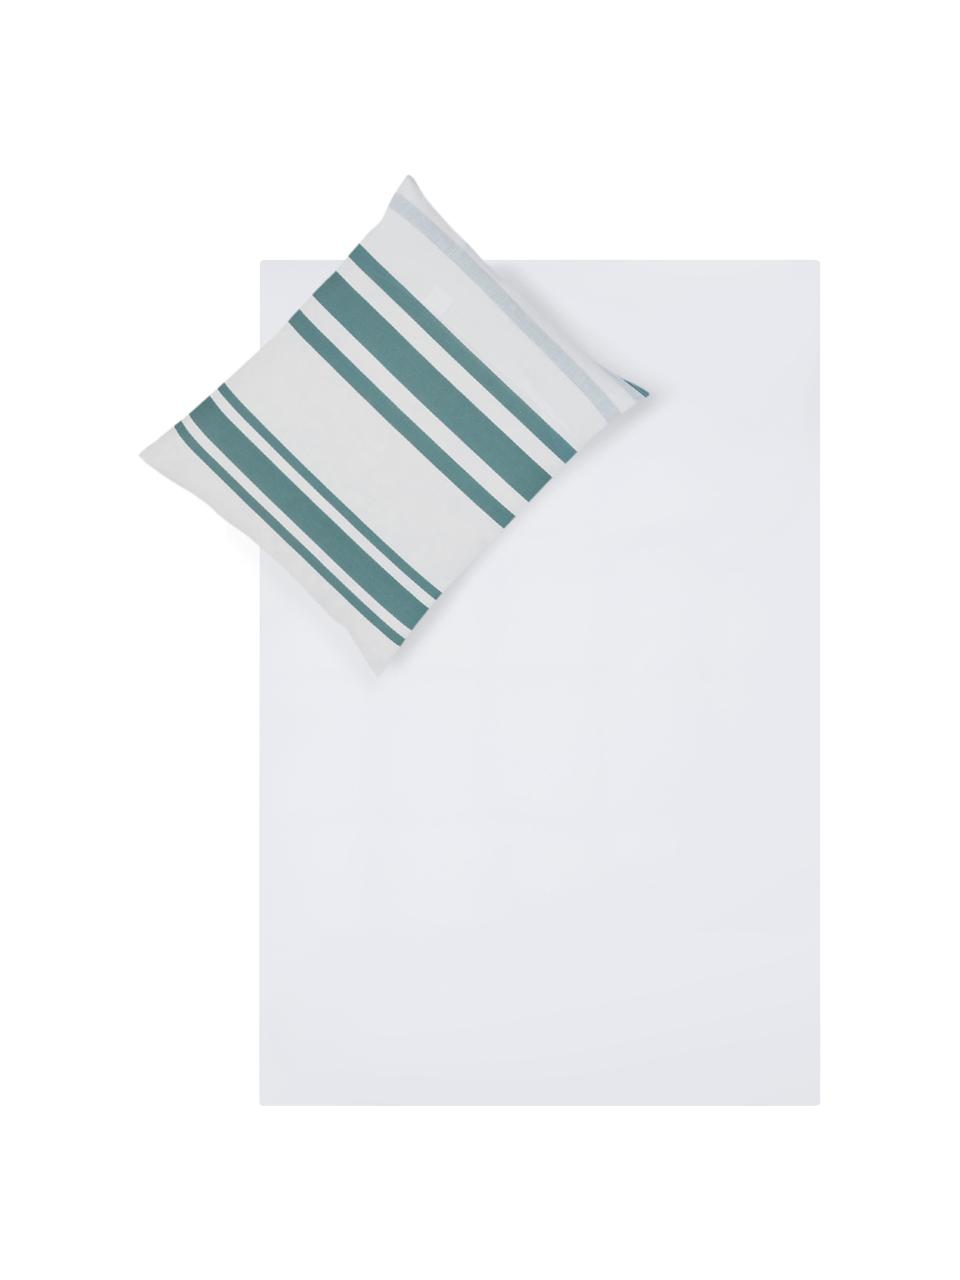 Dubbelzijdig dekbedovertrek Queque, Katoen, Bovenzijde: turquoise, wit. Onderzijde: wit, 140 x 200 cm